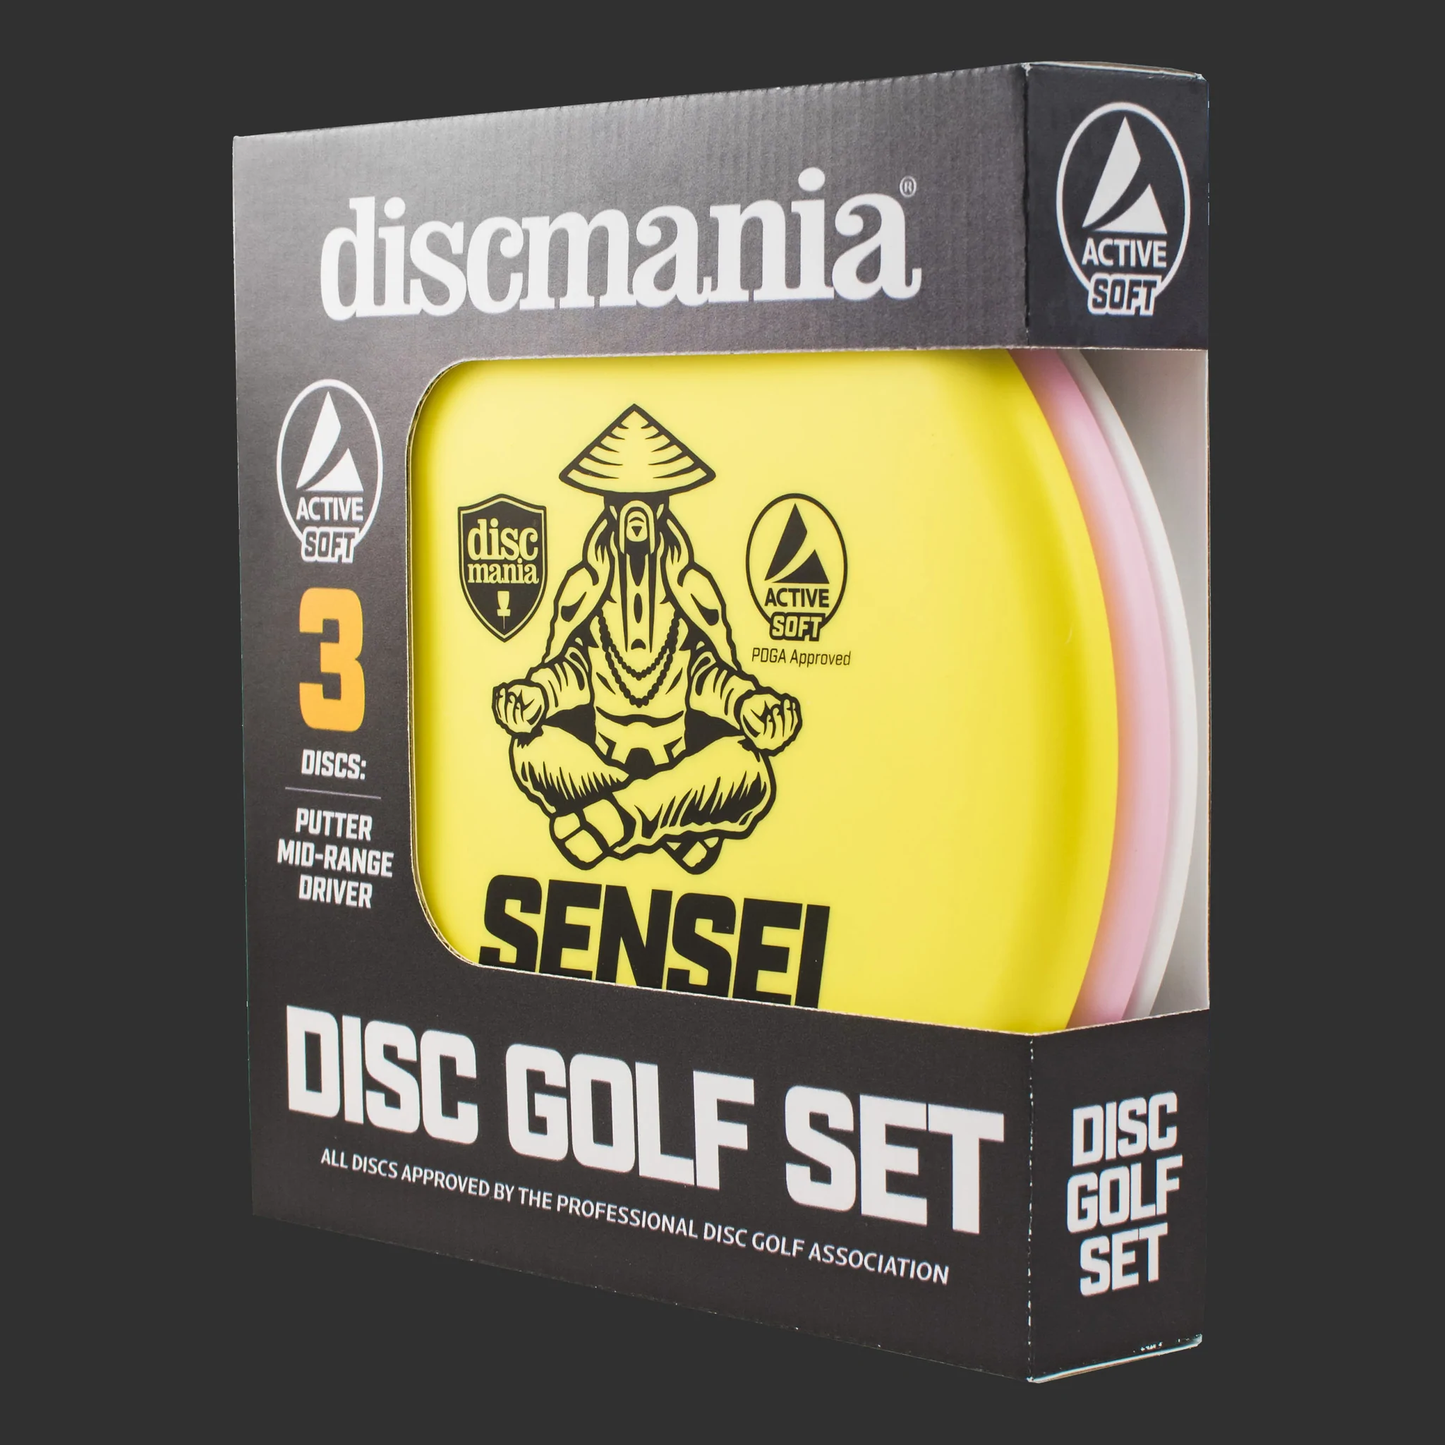 Discmania Active Soft 3 Disc Box Set Discgolf